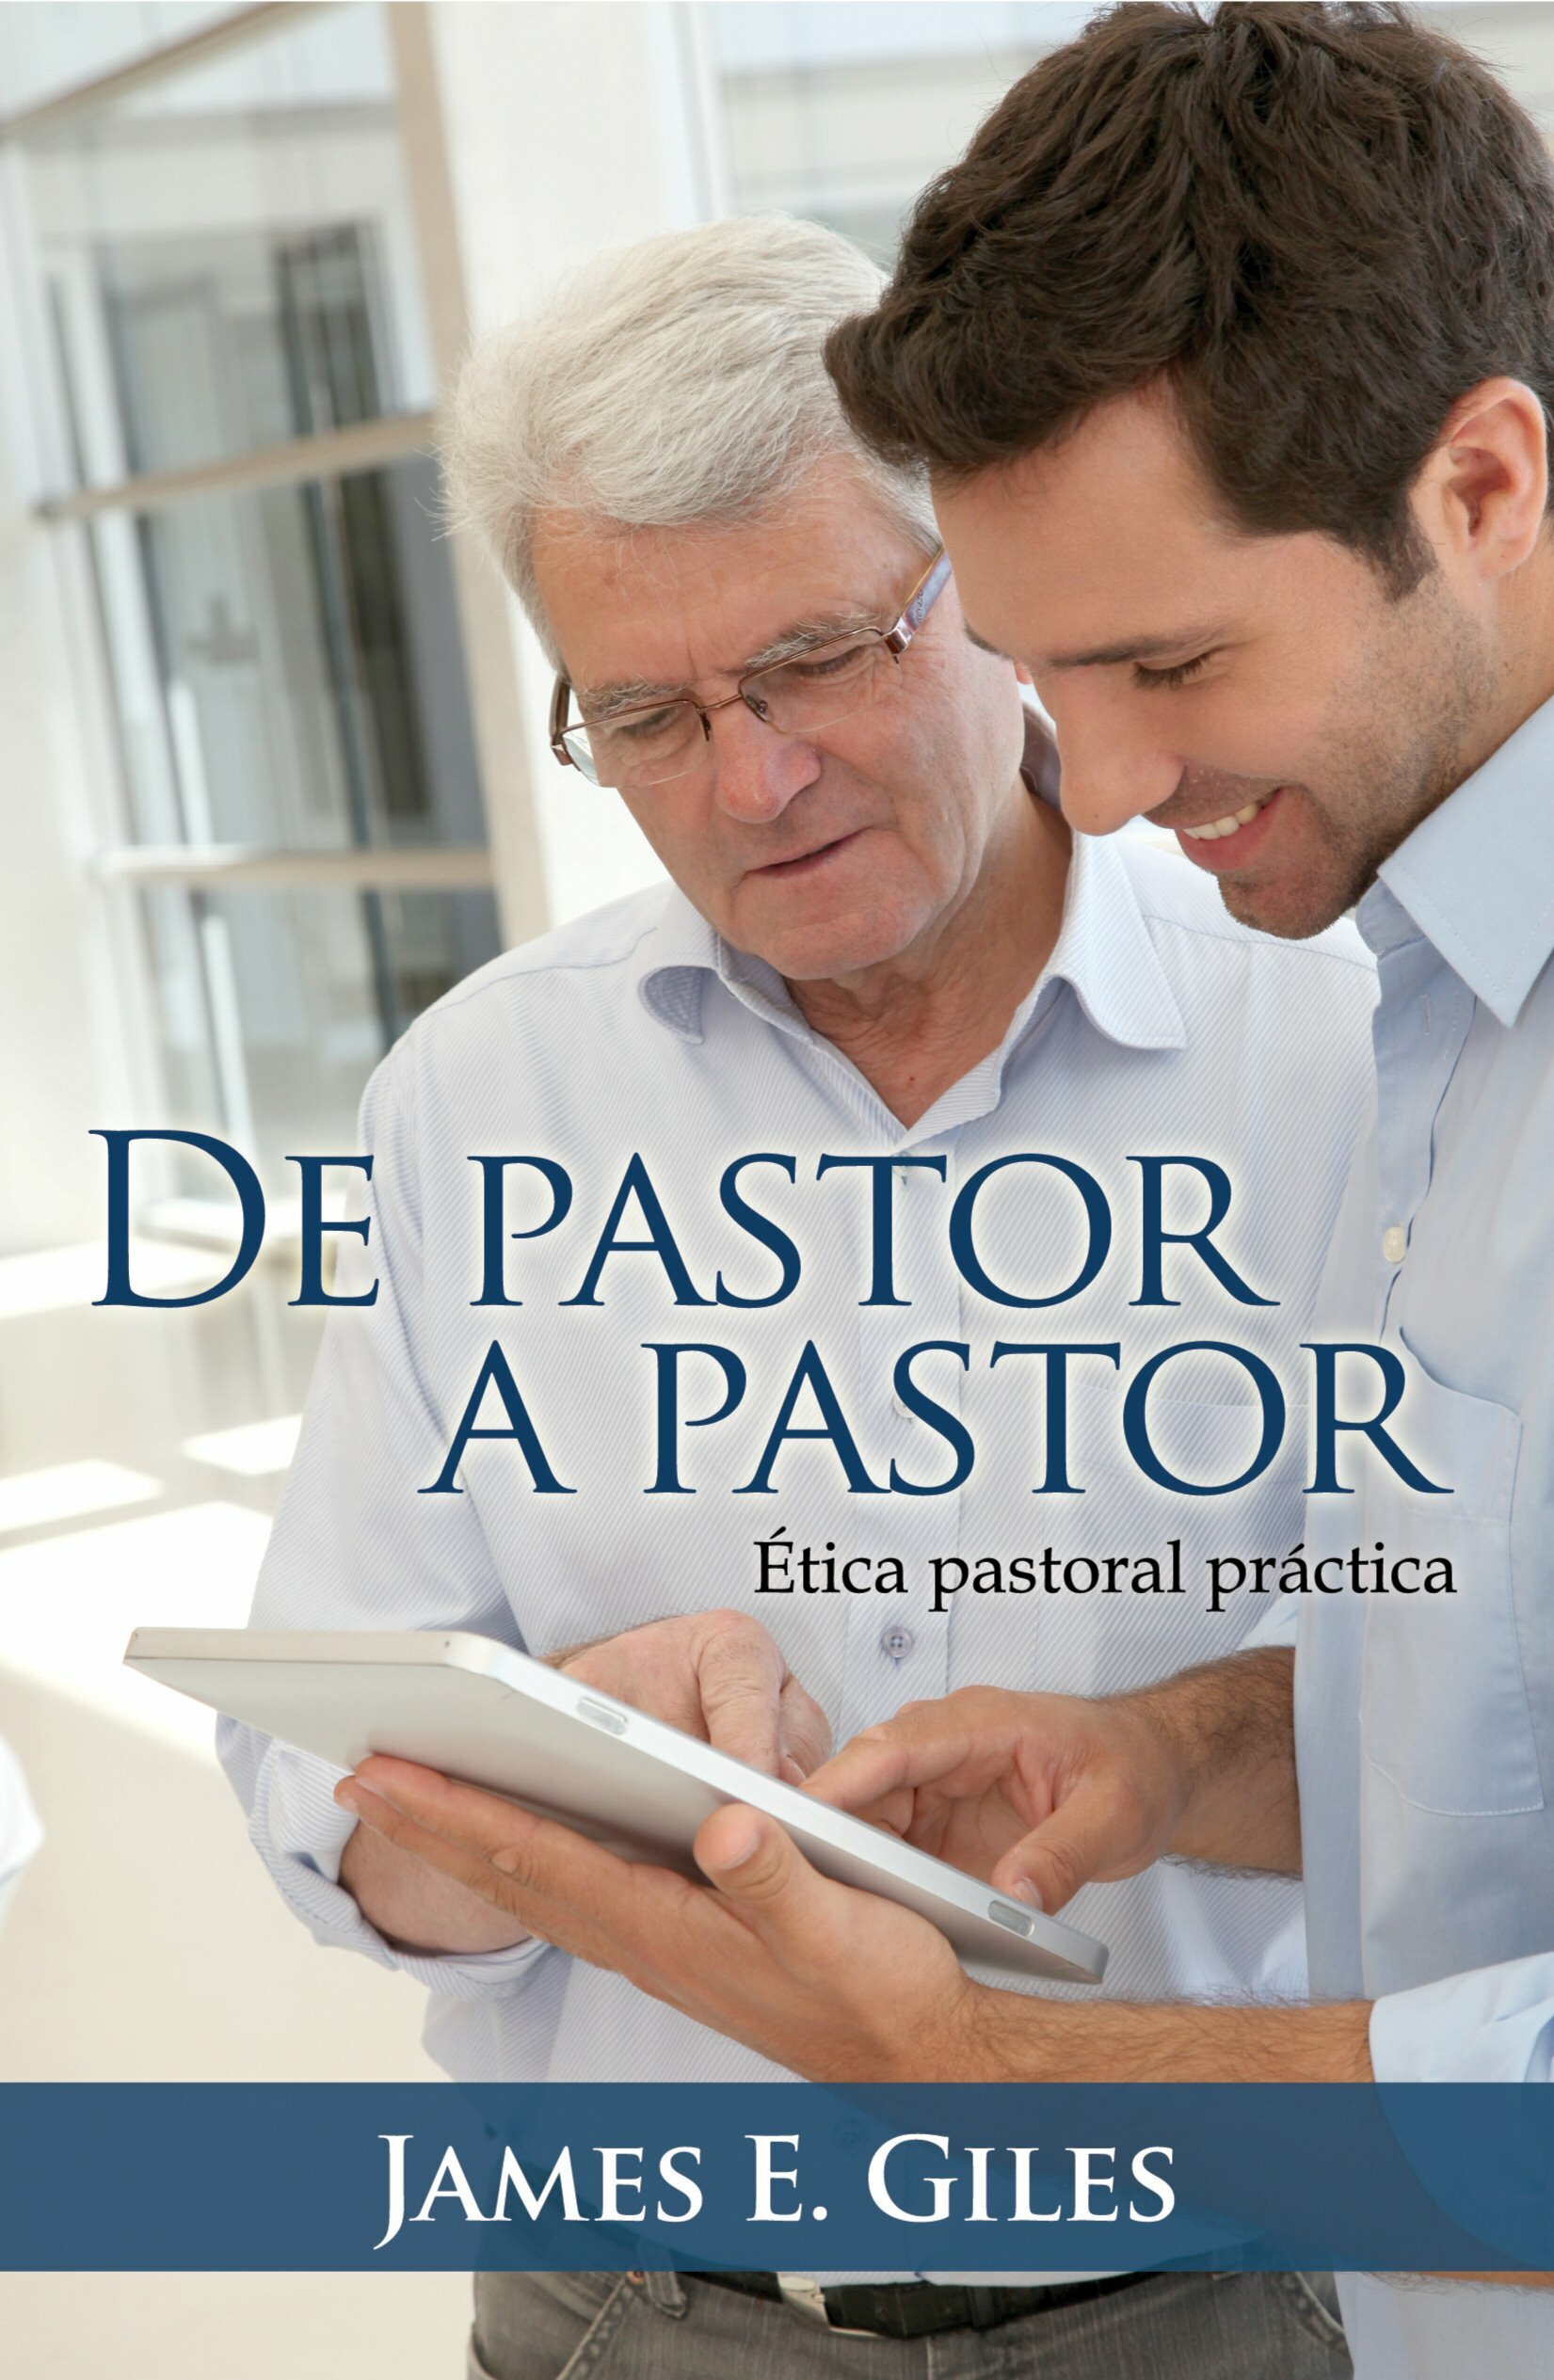 De pastor a pastor, ética pastoral práctica